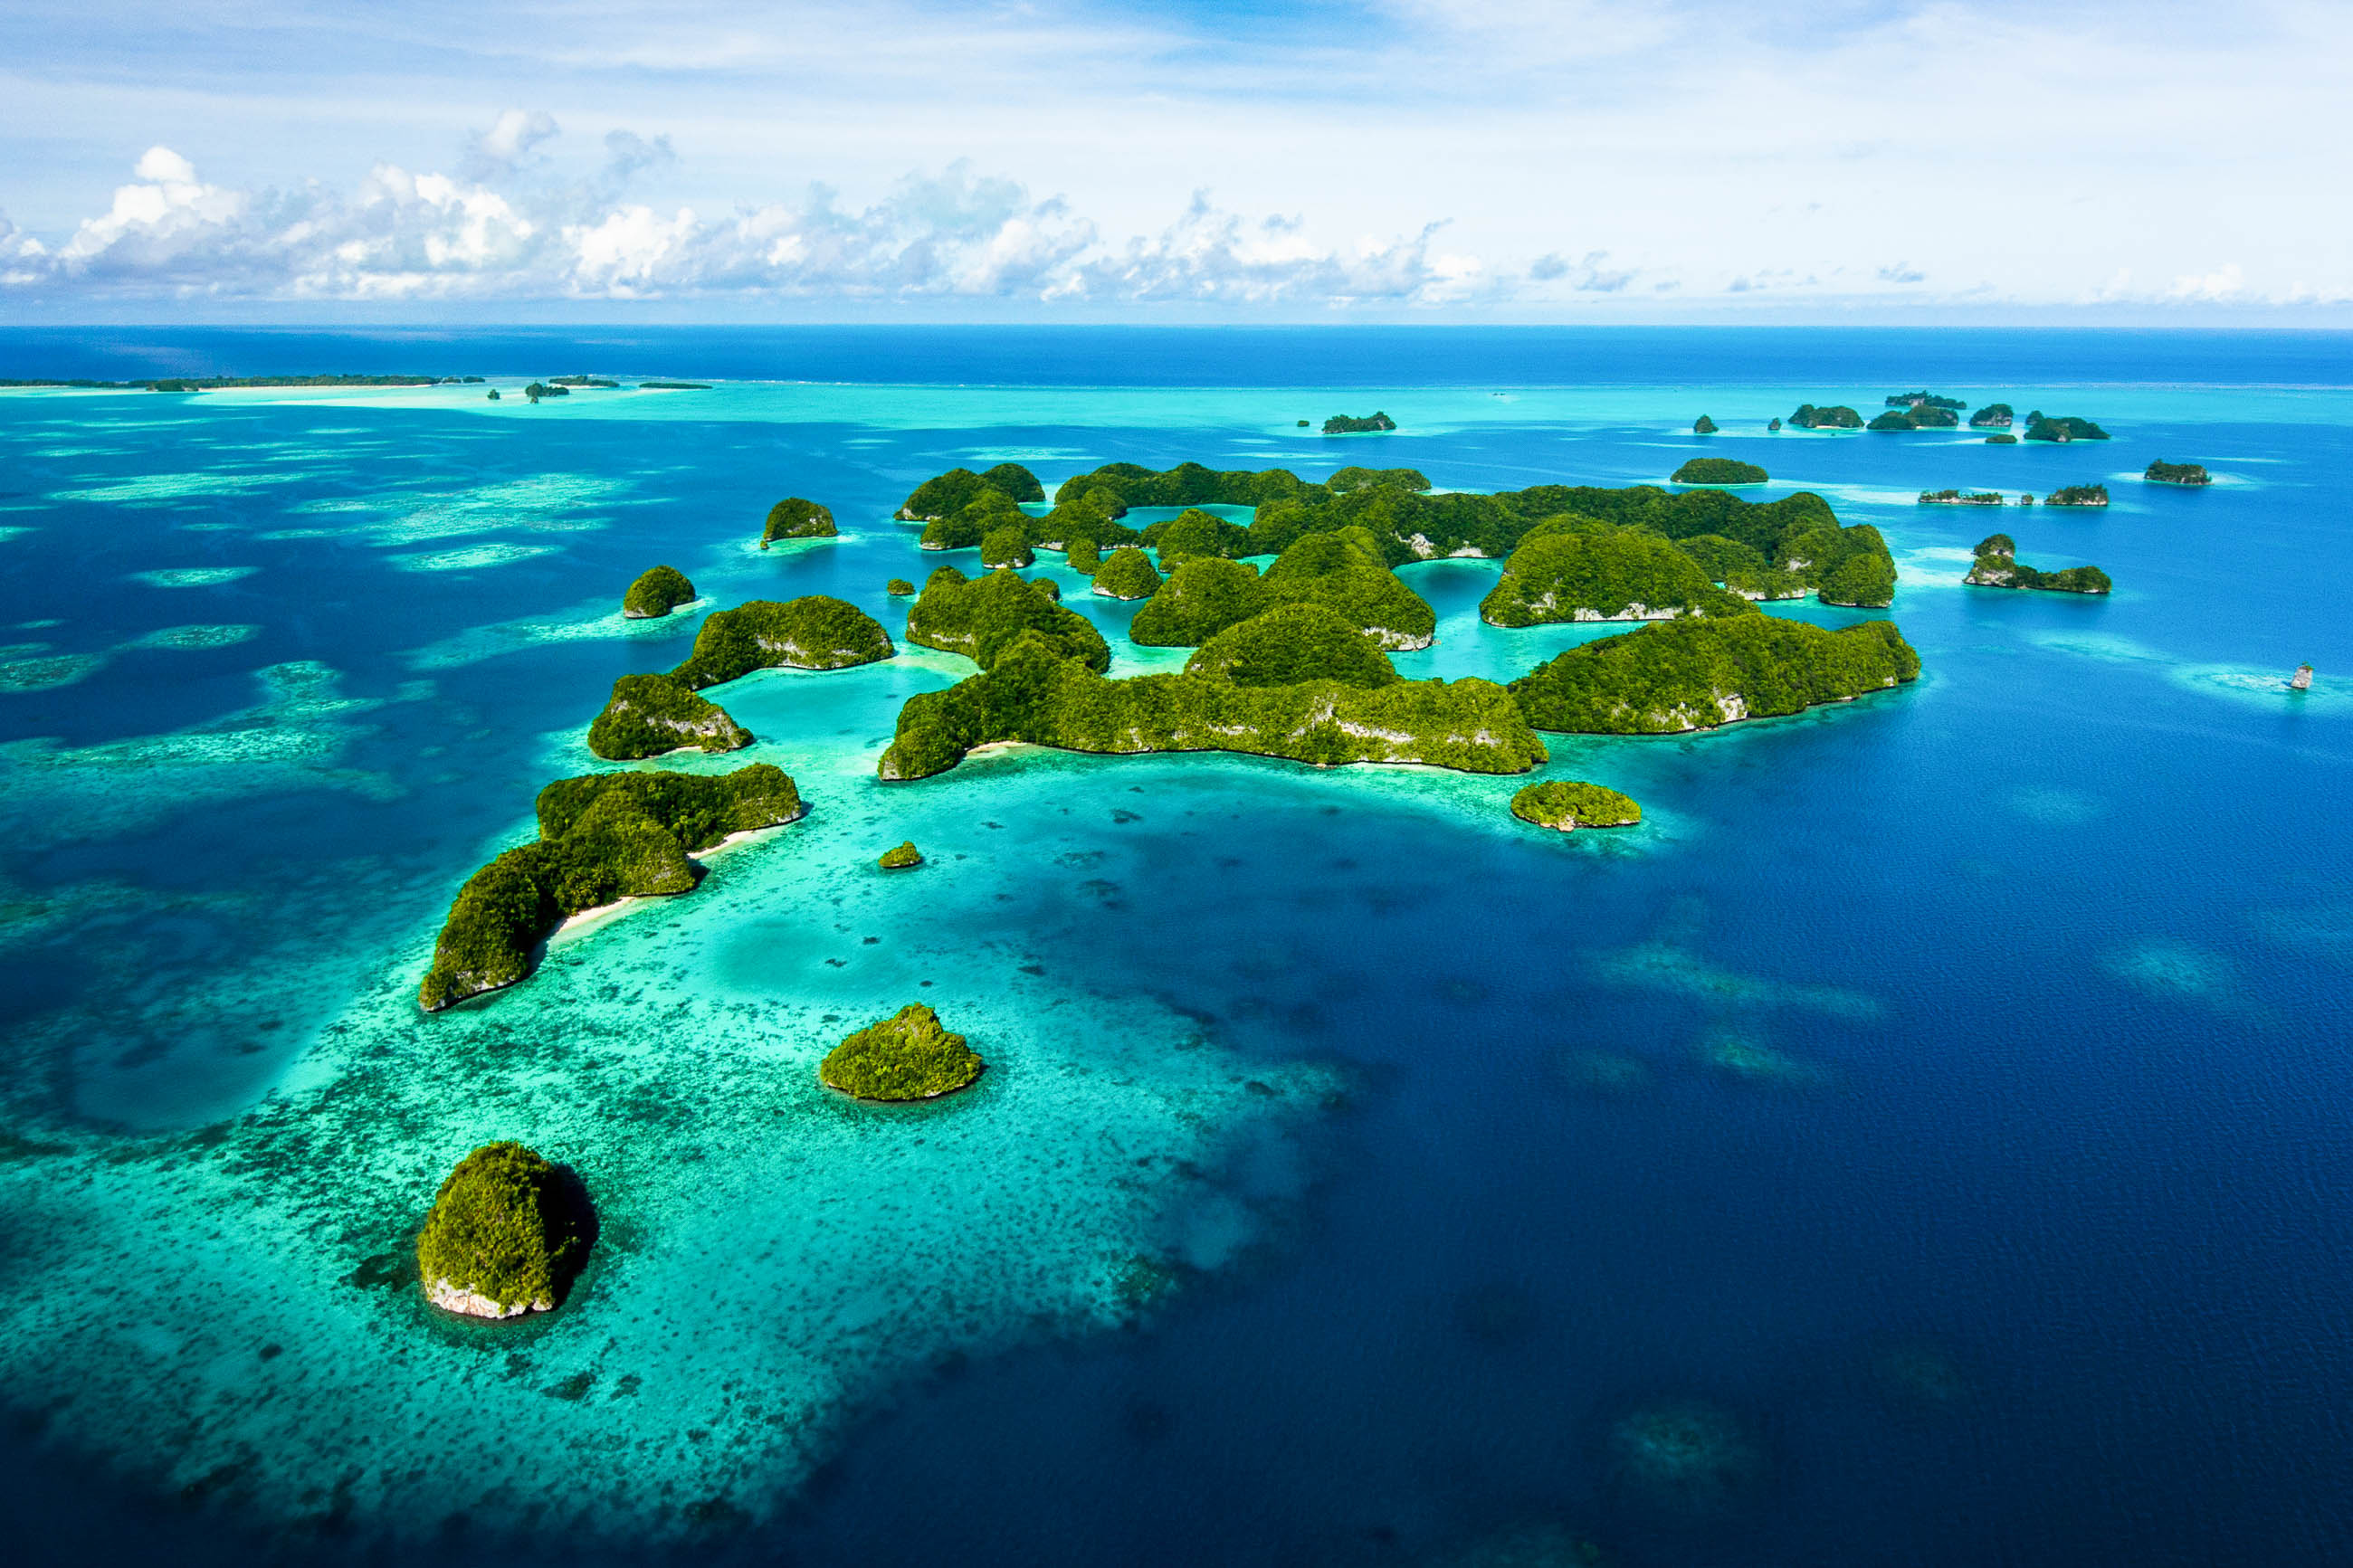 Омывающего остров тихого океана. Остров Палау Микронезия. Федеративные штаты Микронезии. Каролинские острова Атолл. Атоллы Микронезии.